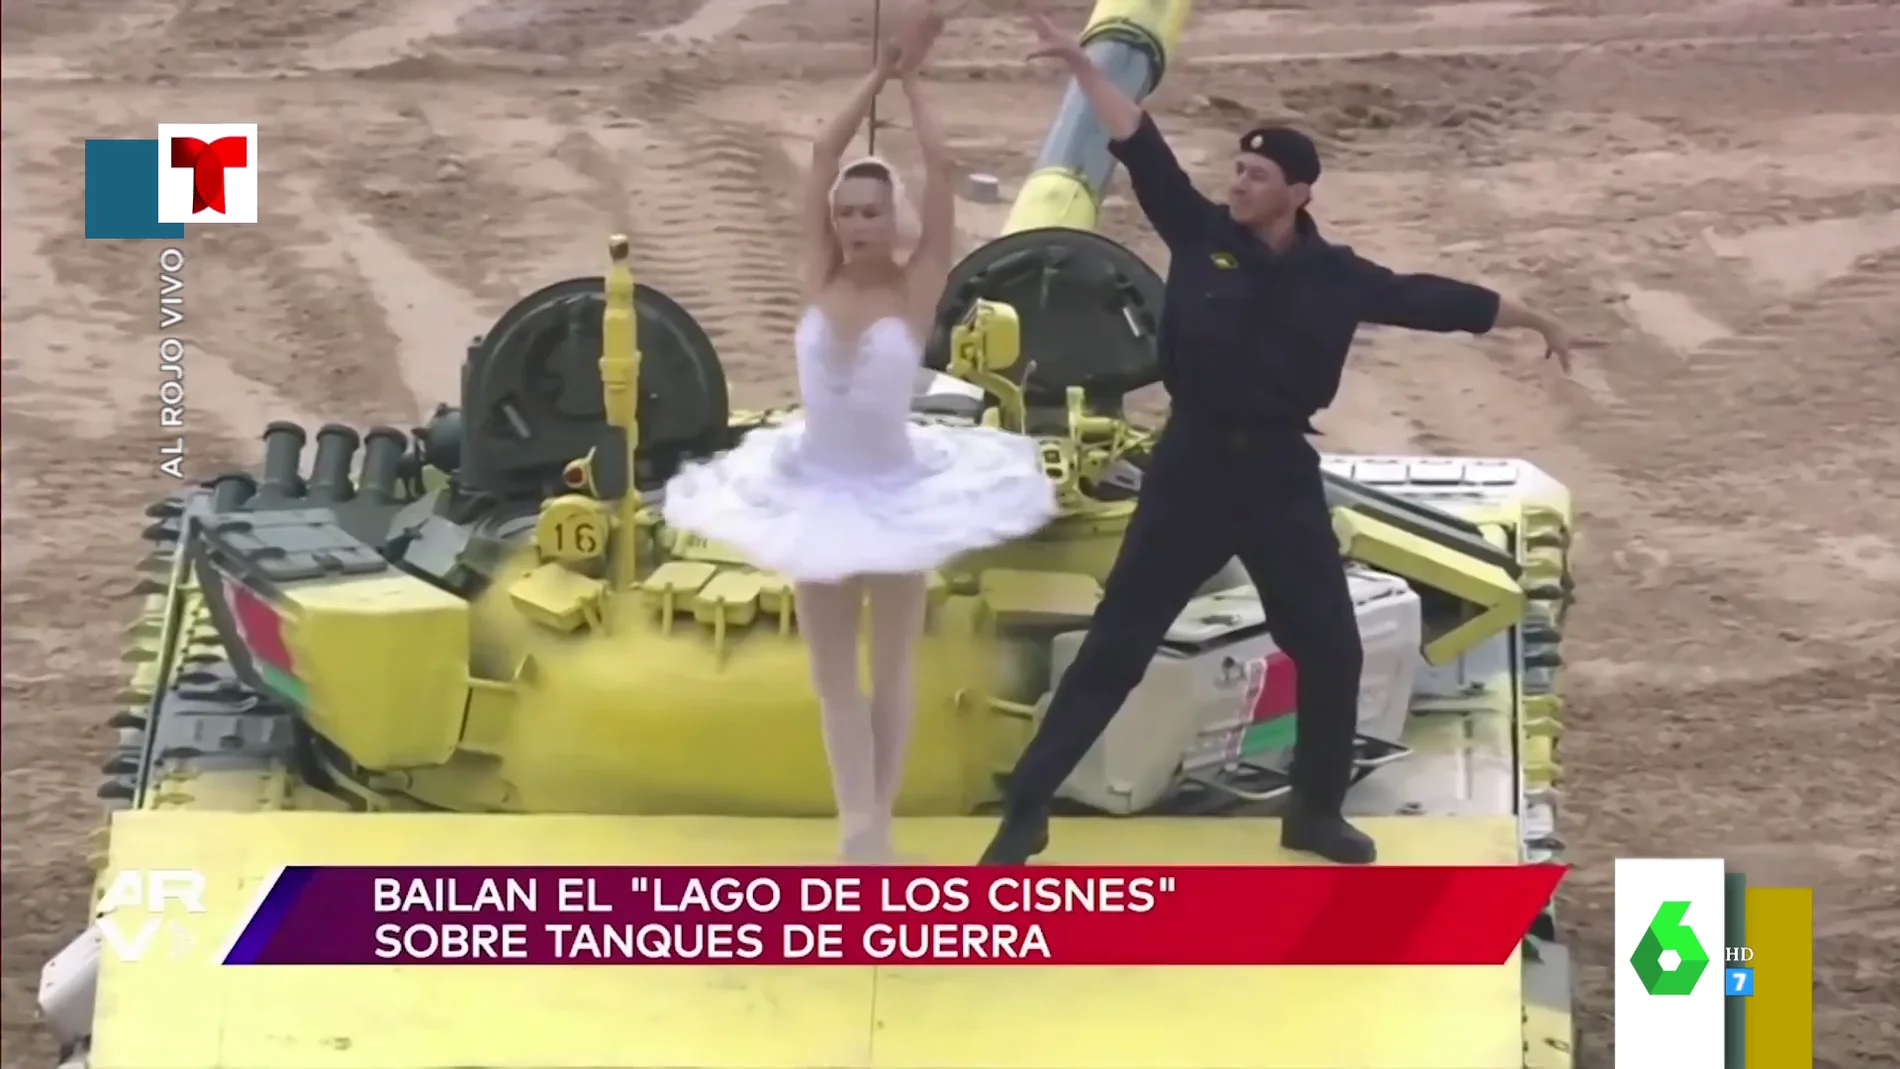 El emotivo vídeo en el que una pareja baile 'El lago de los cisnes' sobre un tanque